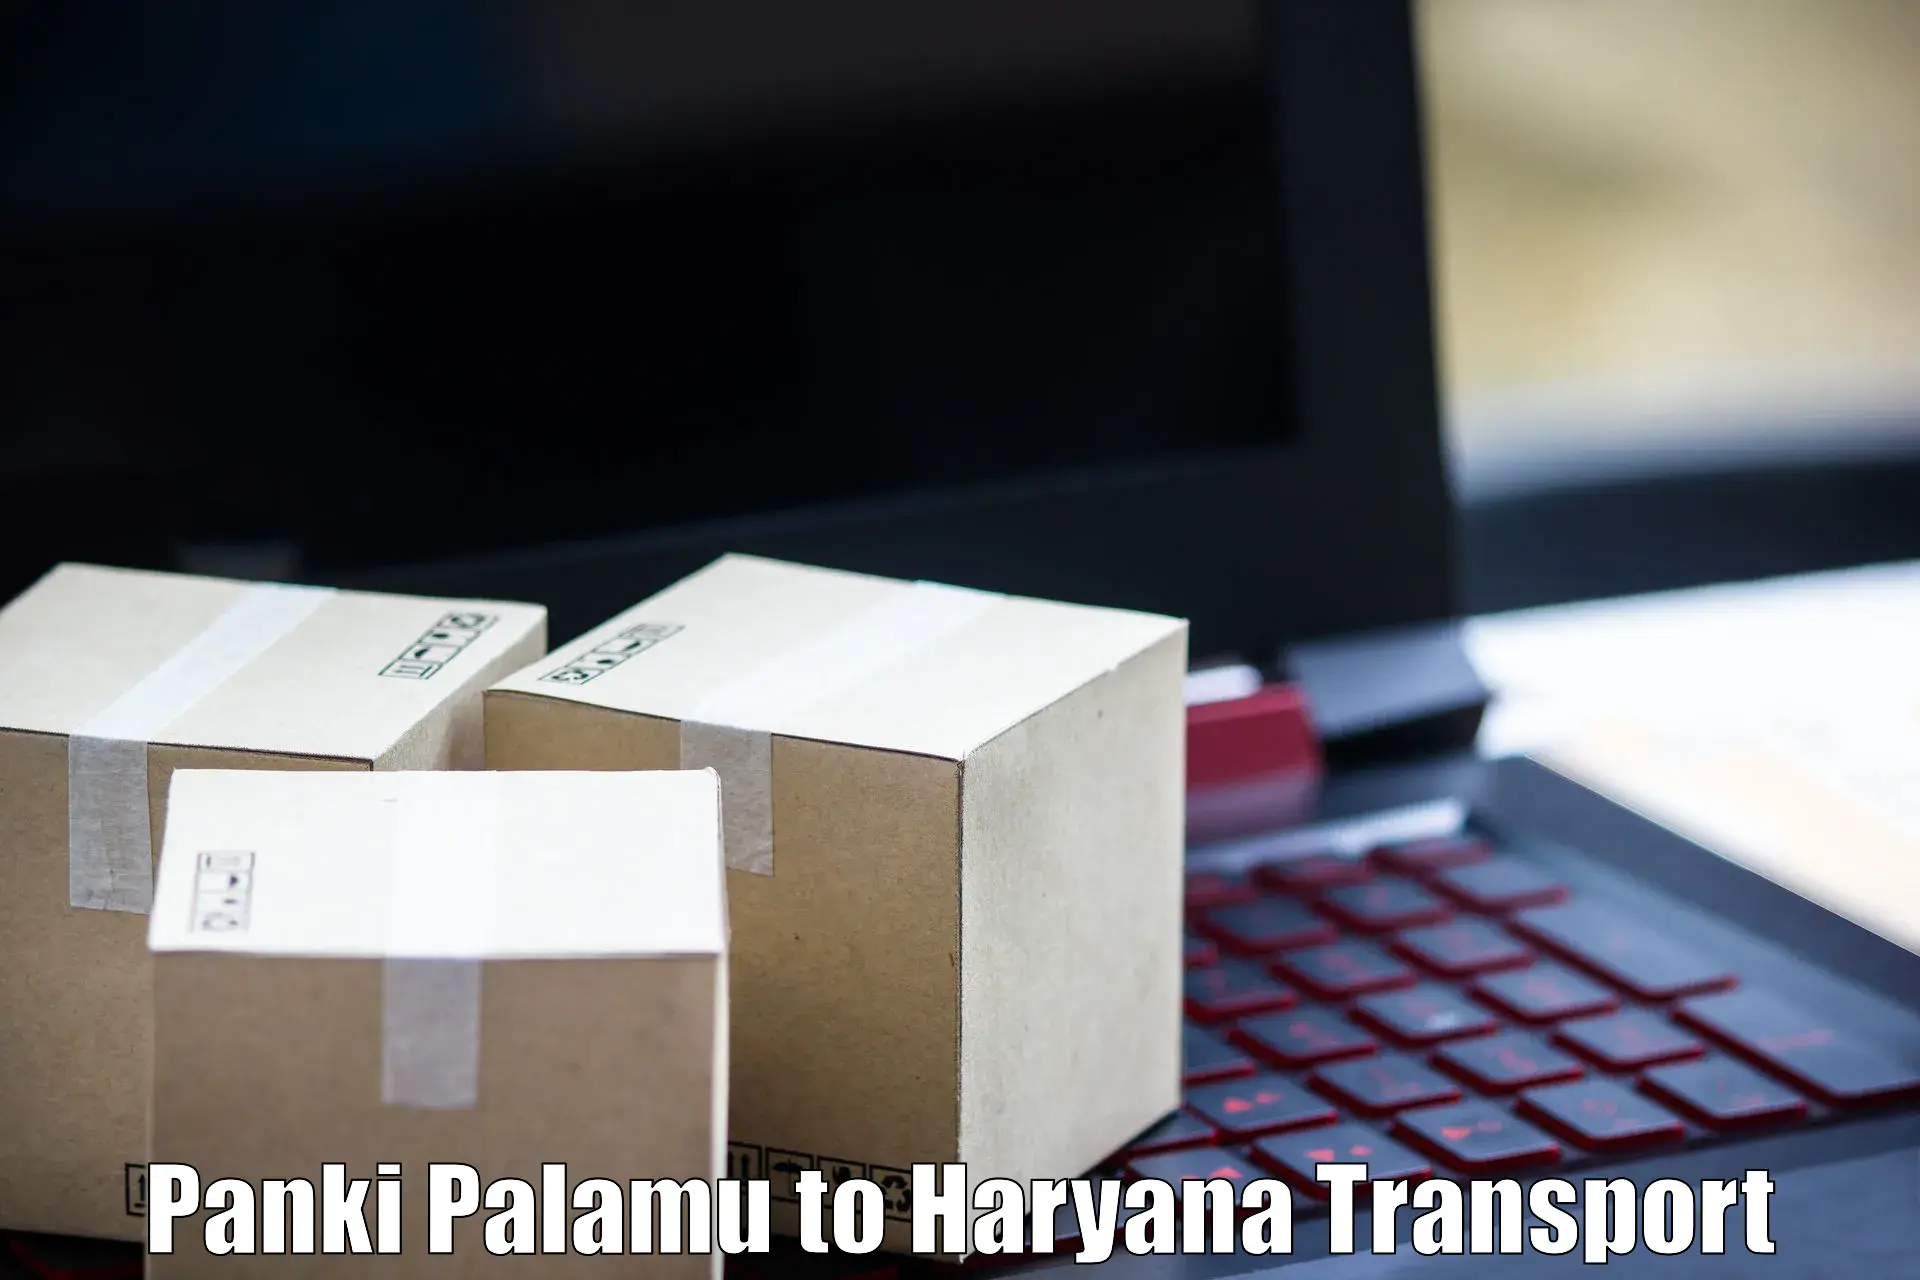 Lorry transport service Panki Palamu to Haryana